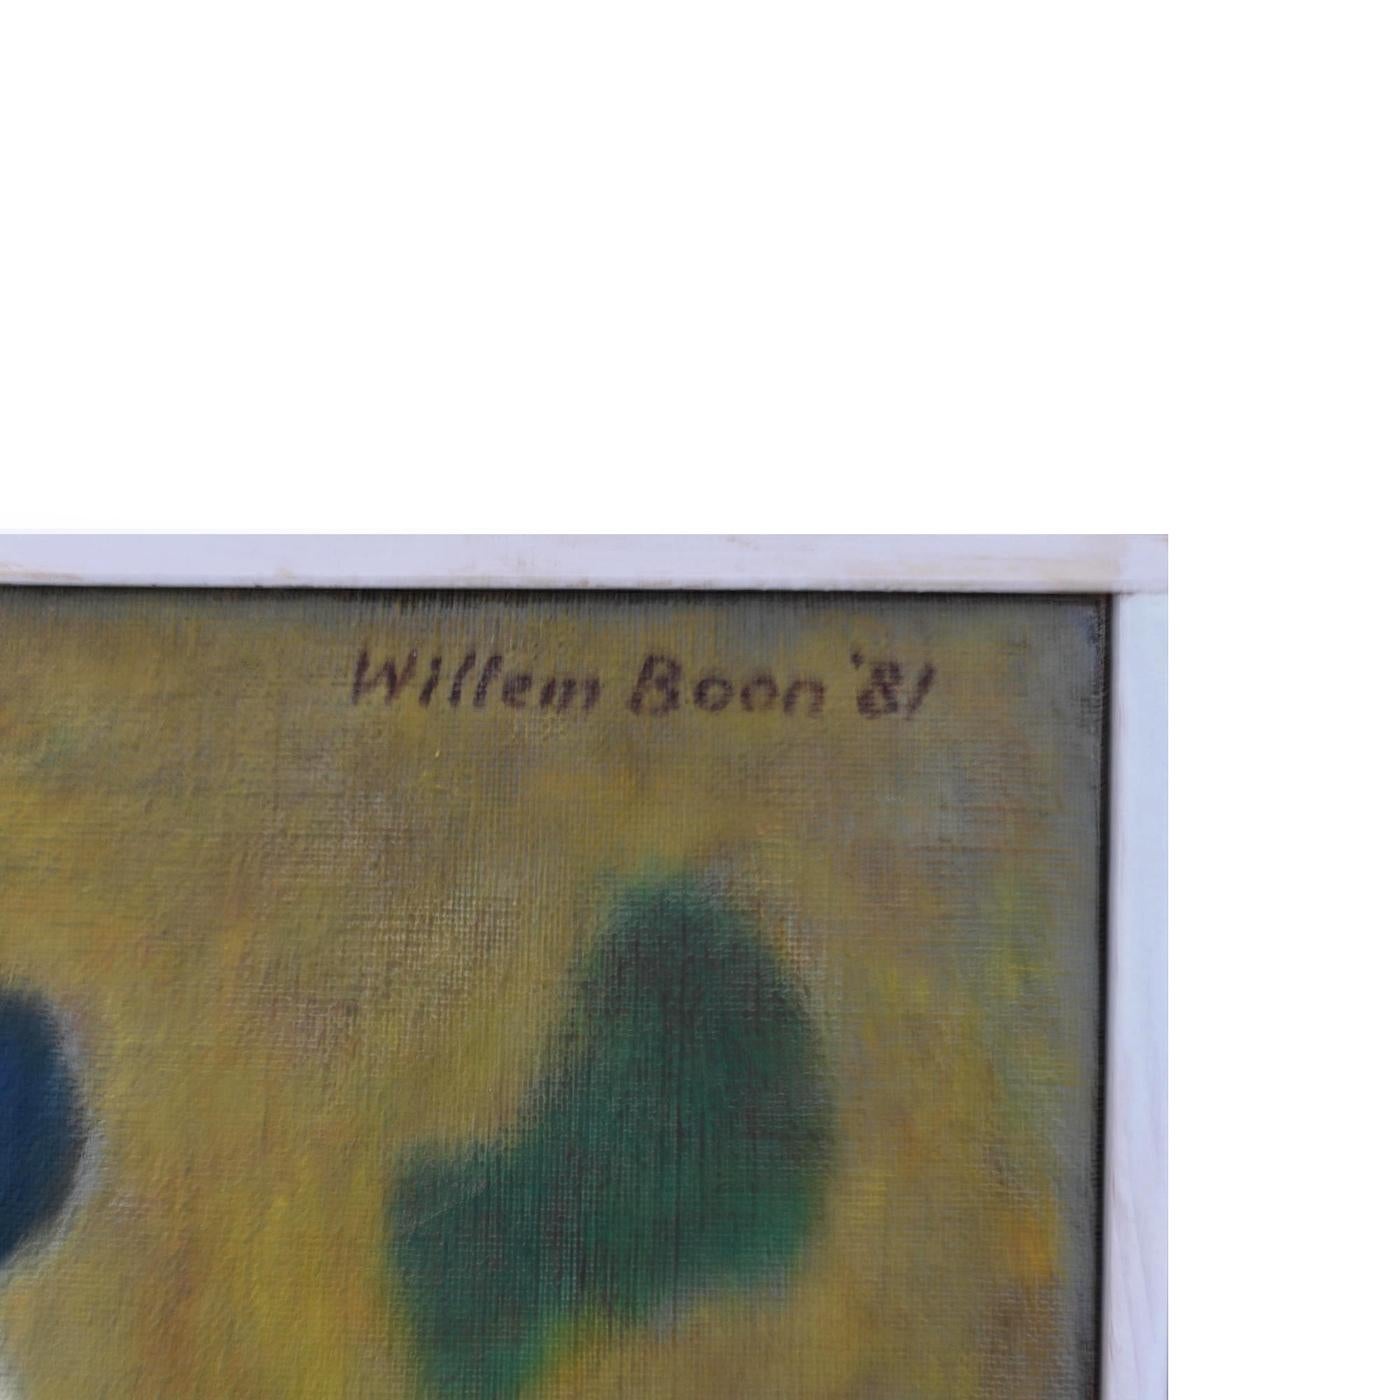 BOON Willem (1902-1982), composition abstraite. Huile sur toile 1981. Peintre néerlandais d'art abstrait bien connu. Dans un petit cadre en bois blanc.